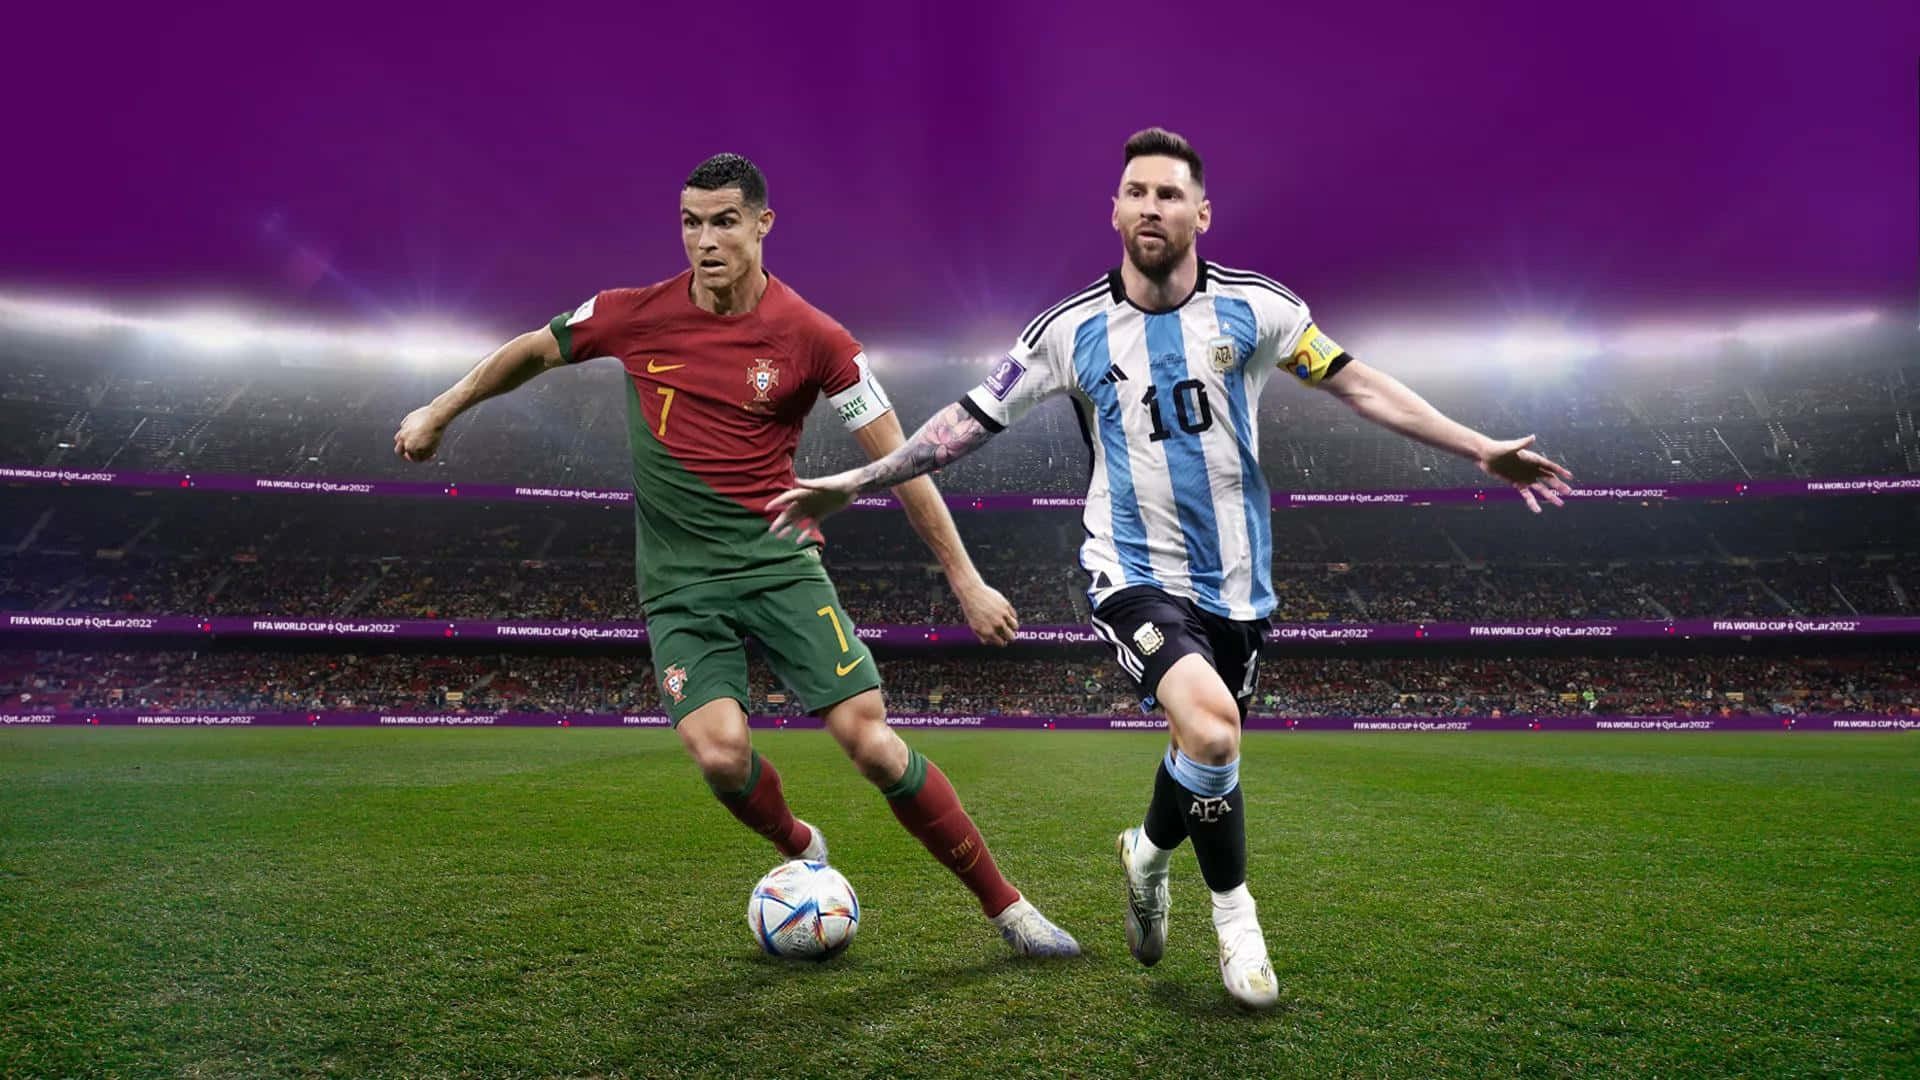 Messi_vs_ Ronaldo_ Stadium_ Showdown Wallpaper